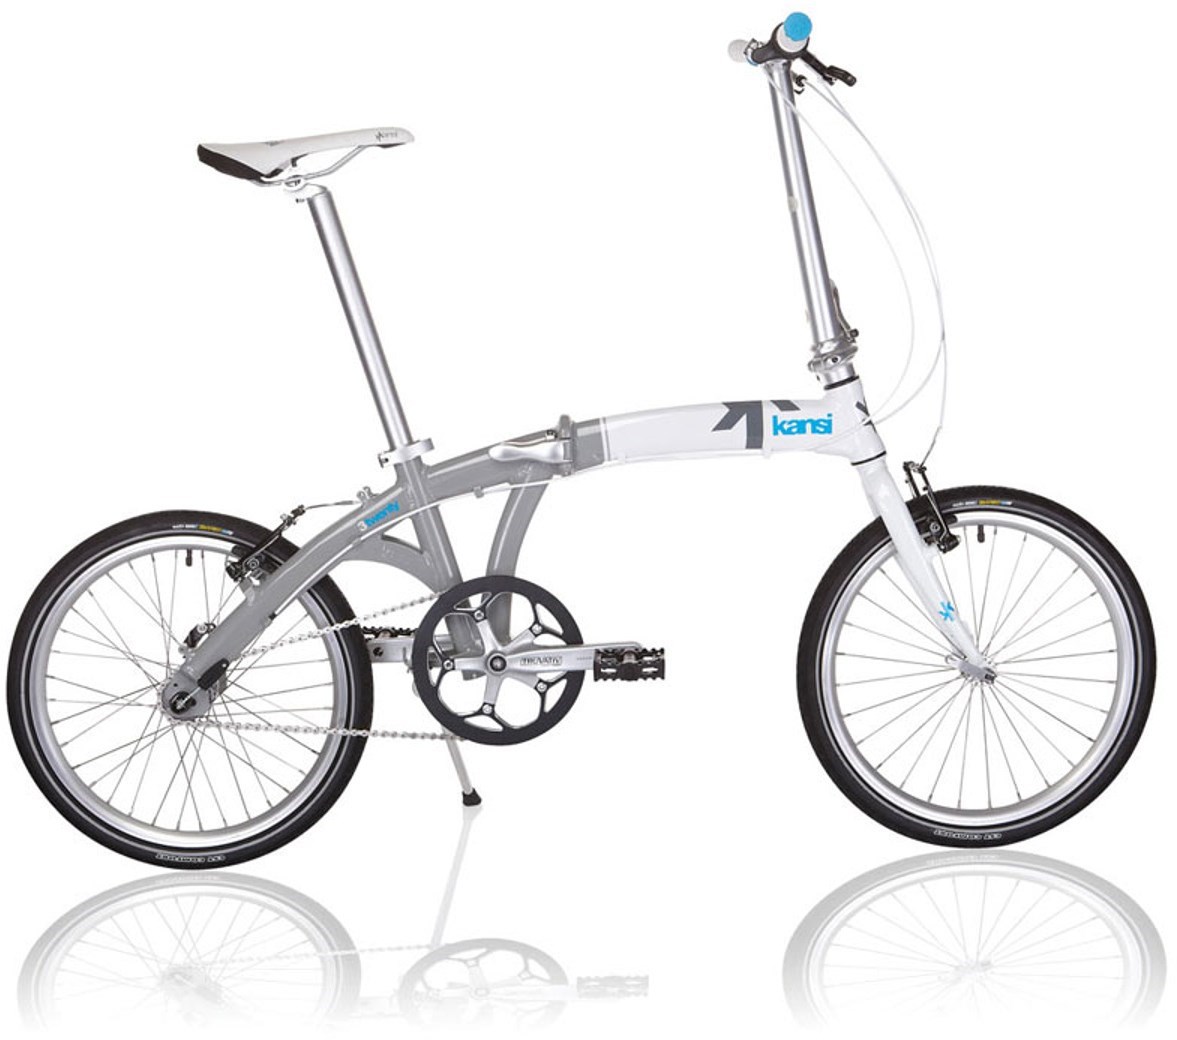 Kansi 3Twenty 2013 - Folding Bike product image